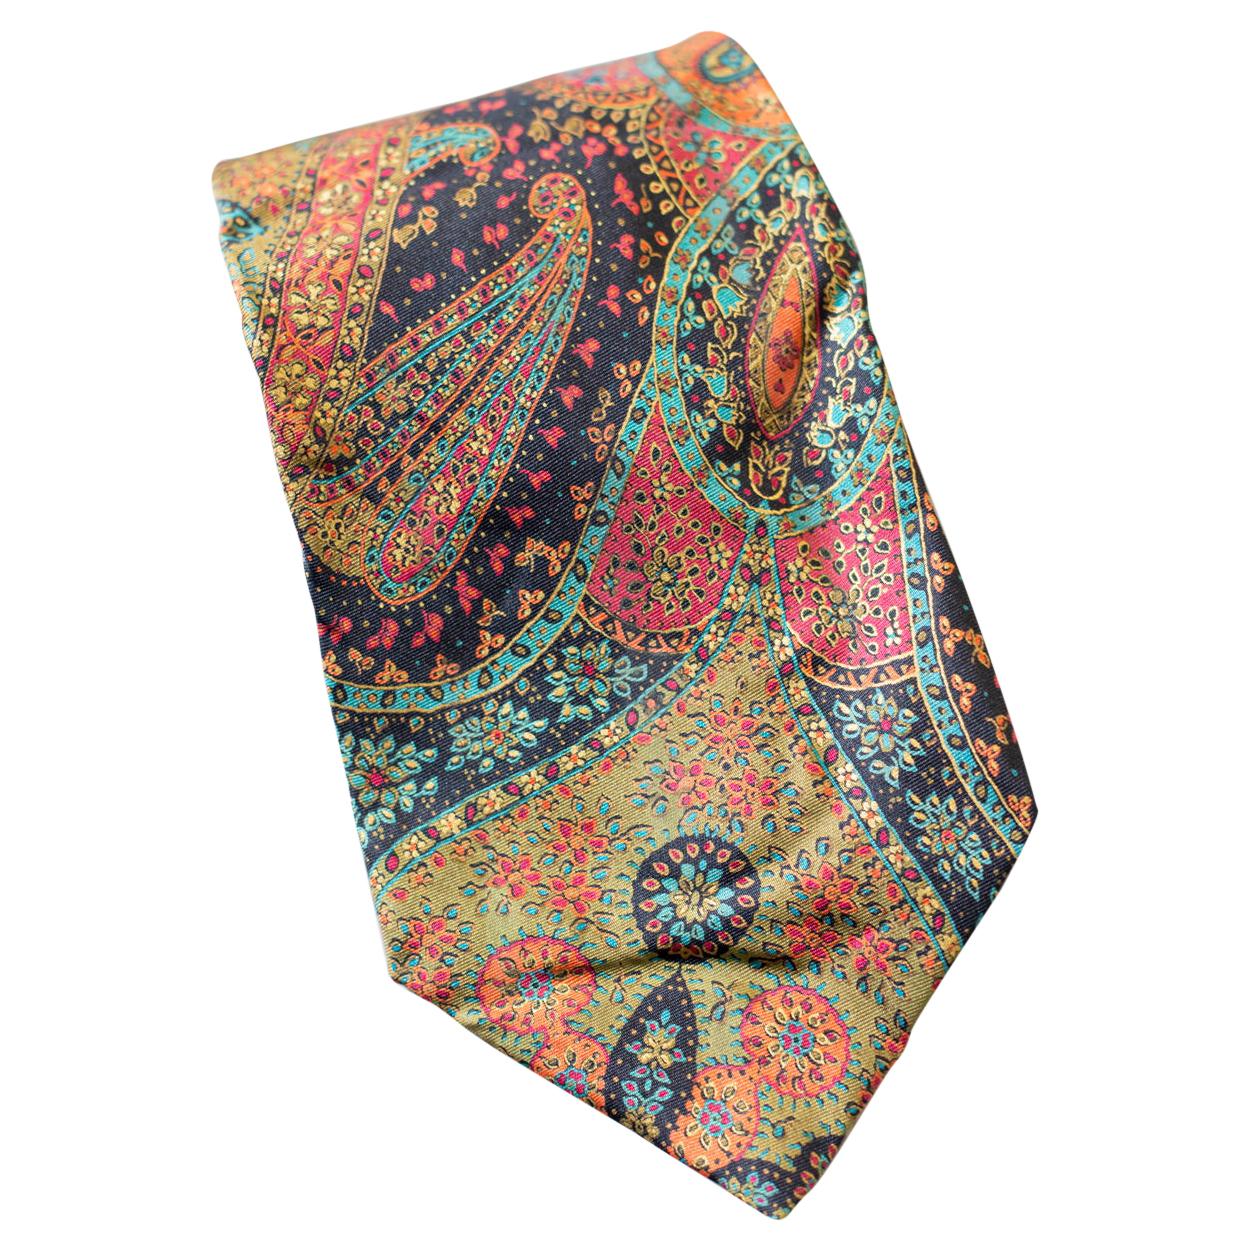 Guv Laroche cravate vintage en soie entièrement recouverte d'un motif cachemire